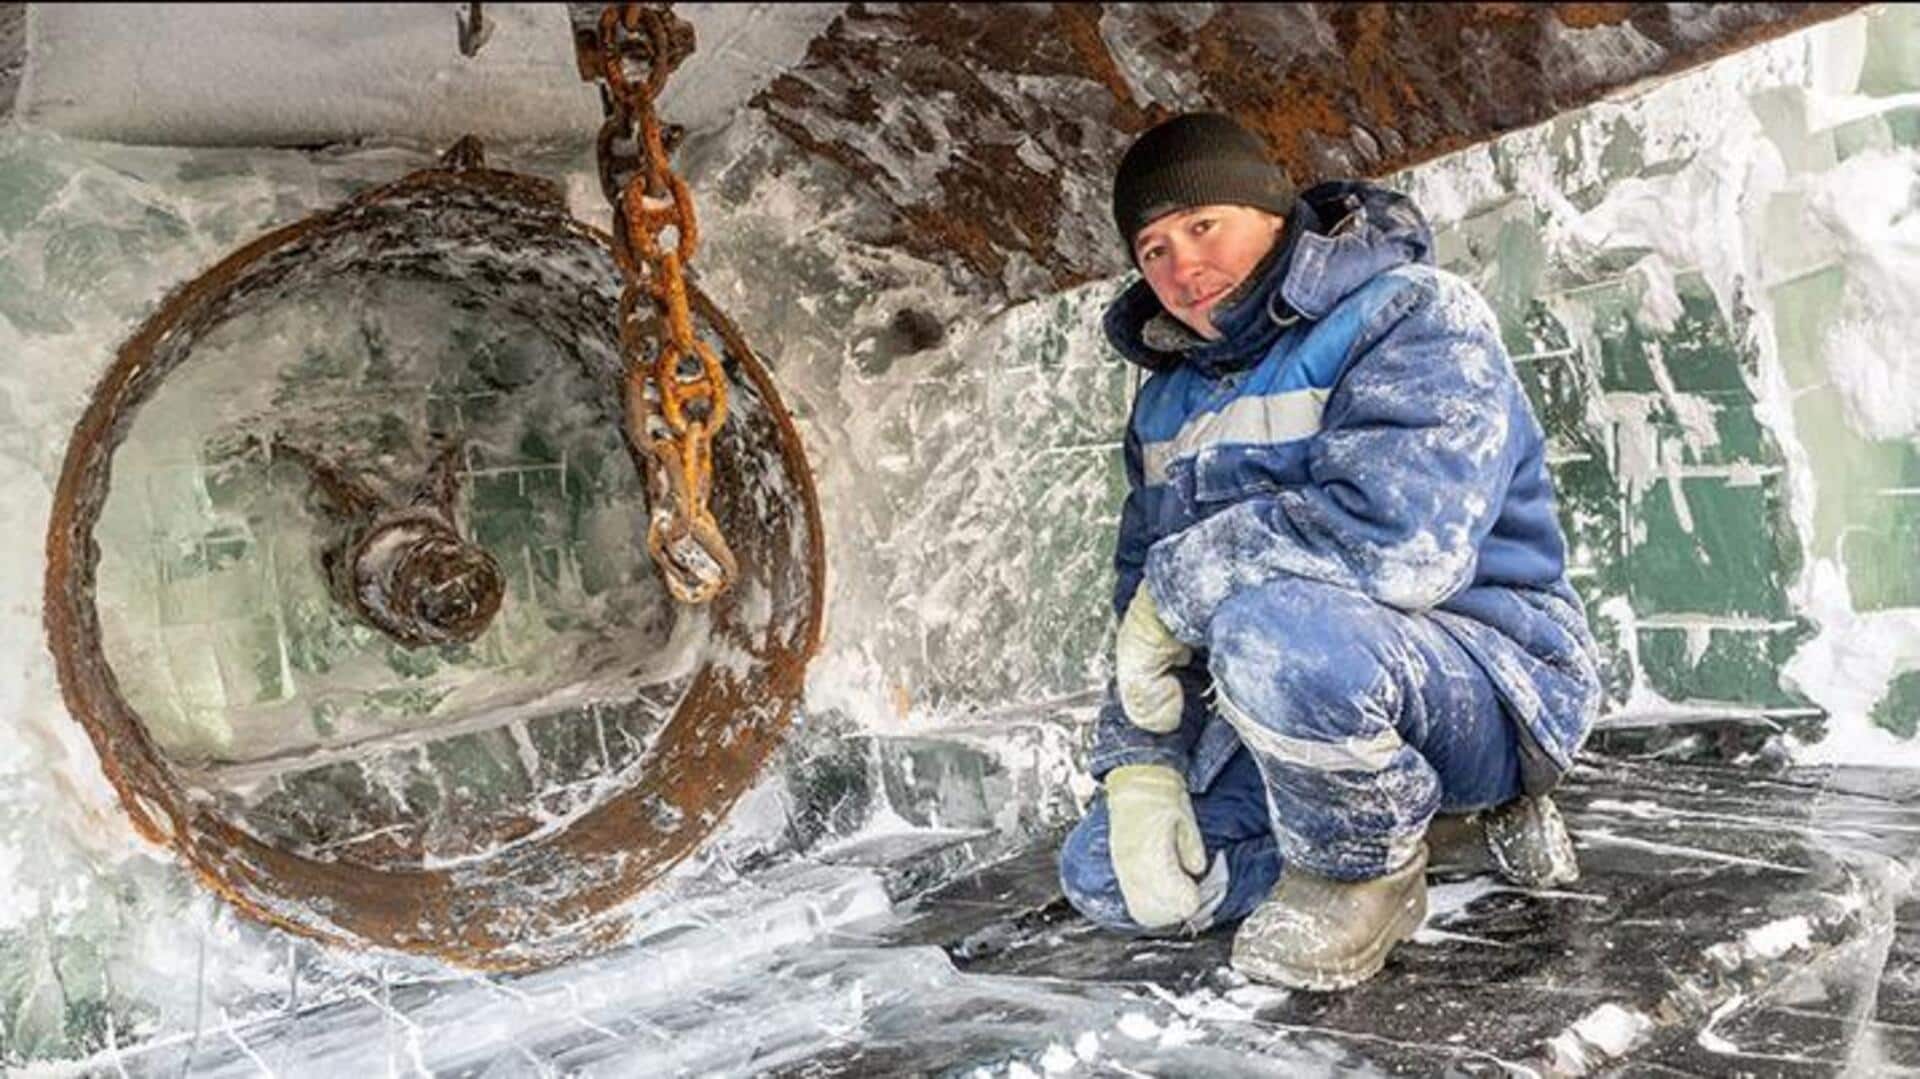 Pekerjaan Tersulit Di Dunia Ada Di Galangan Kapal Siberia 